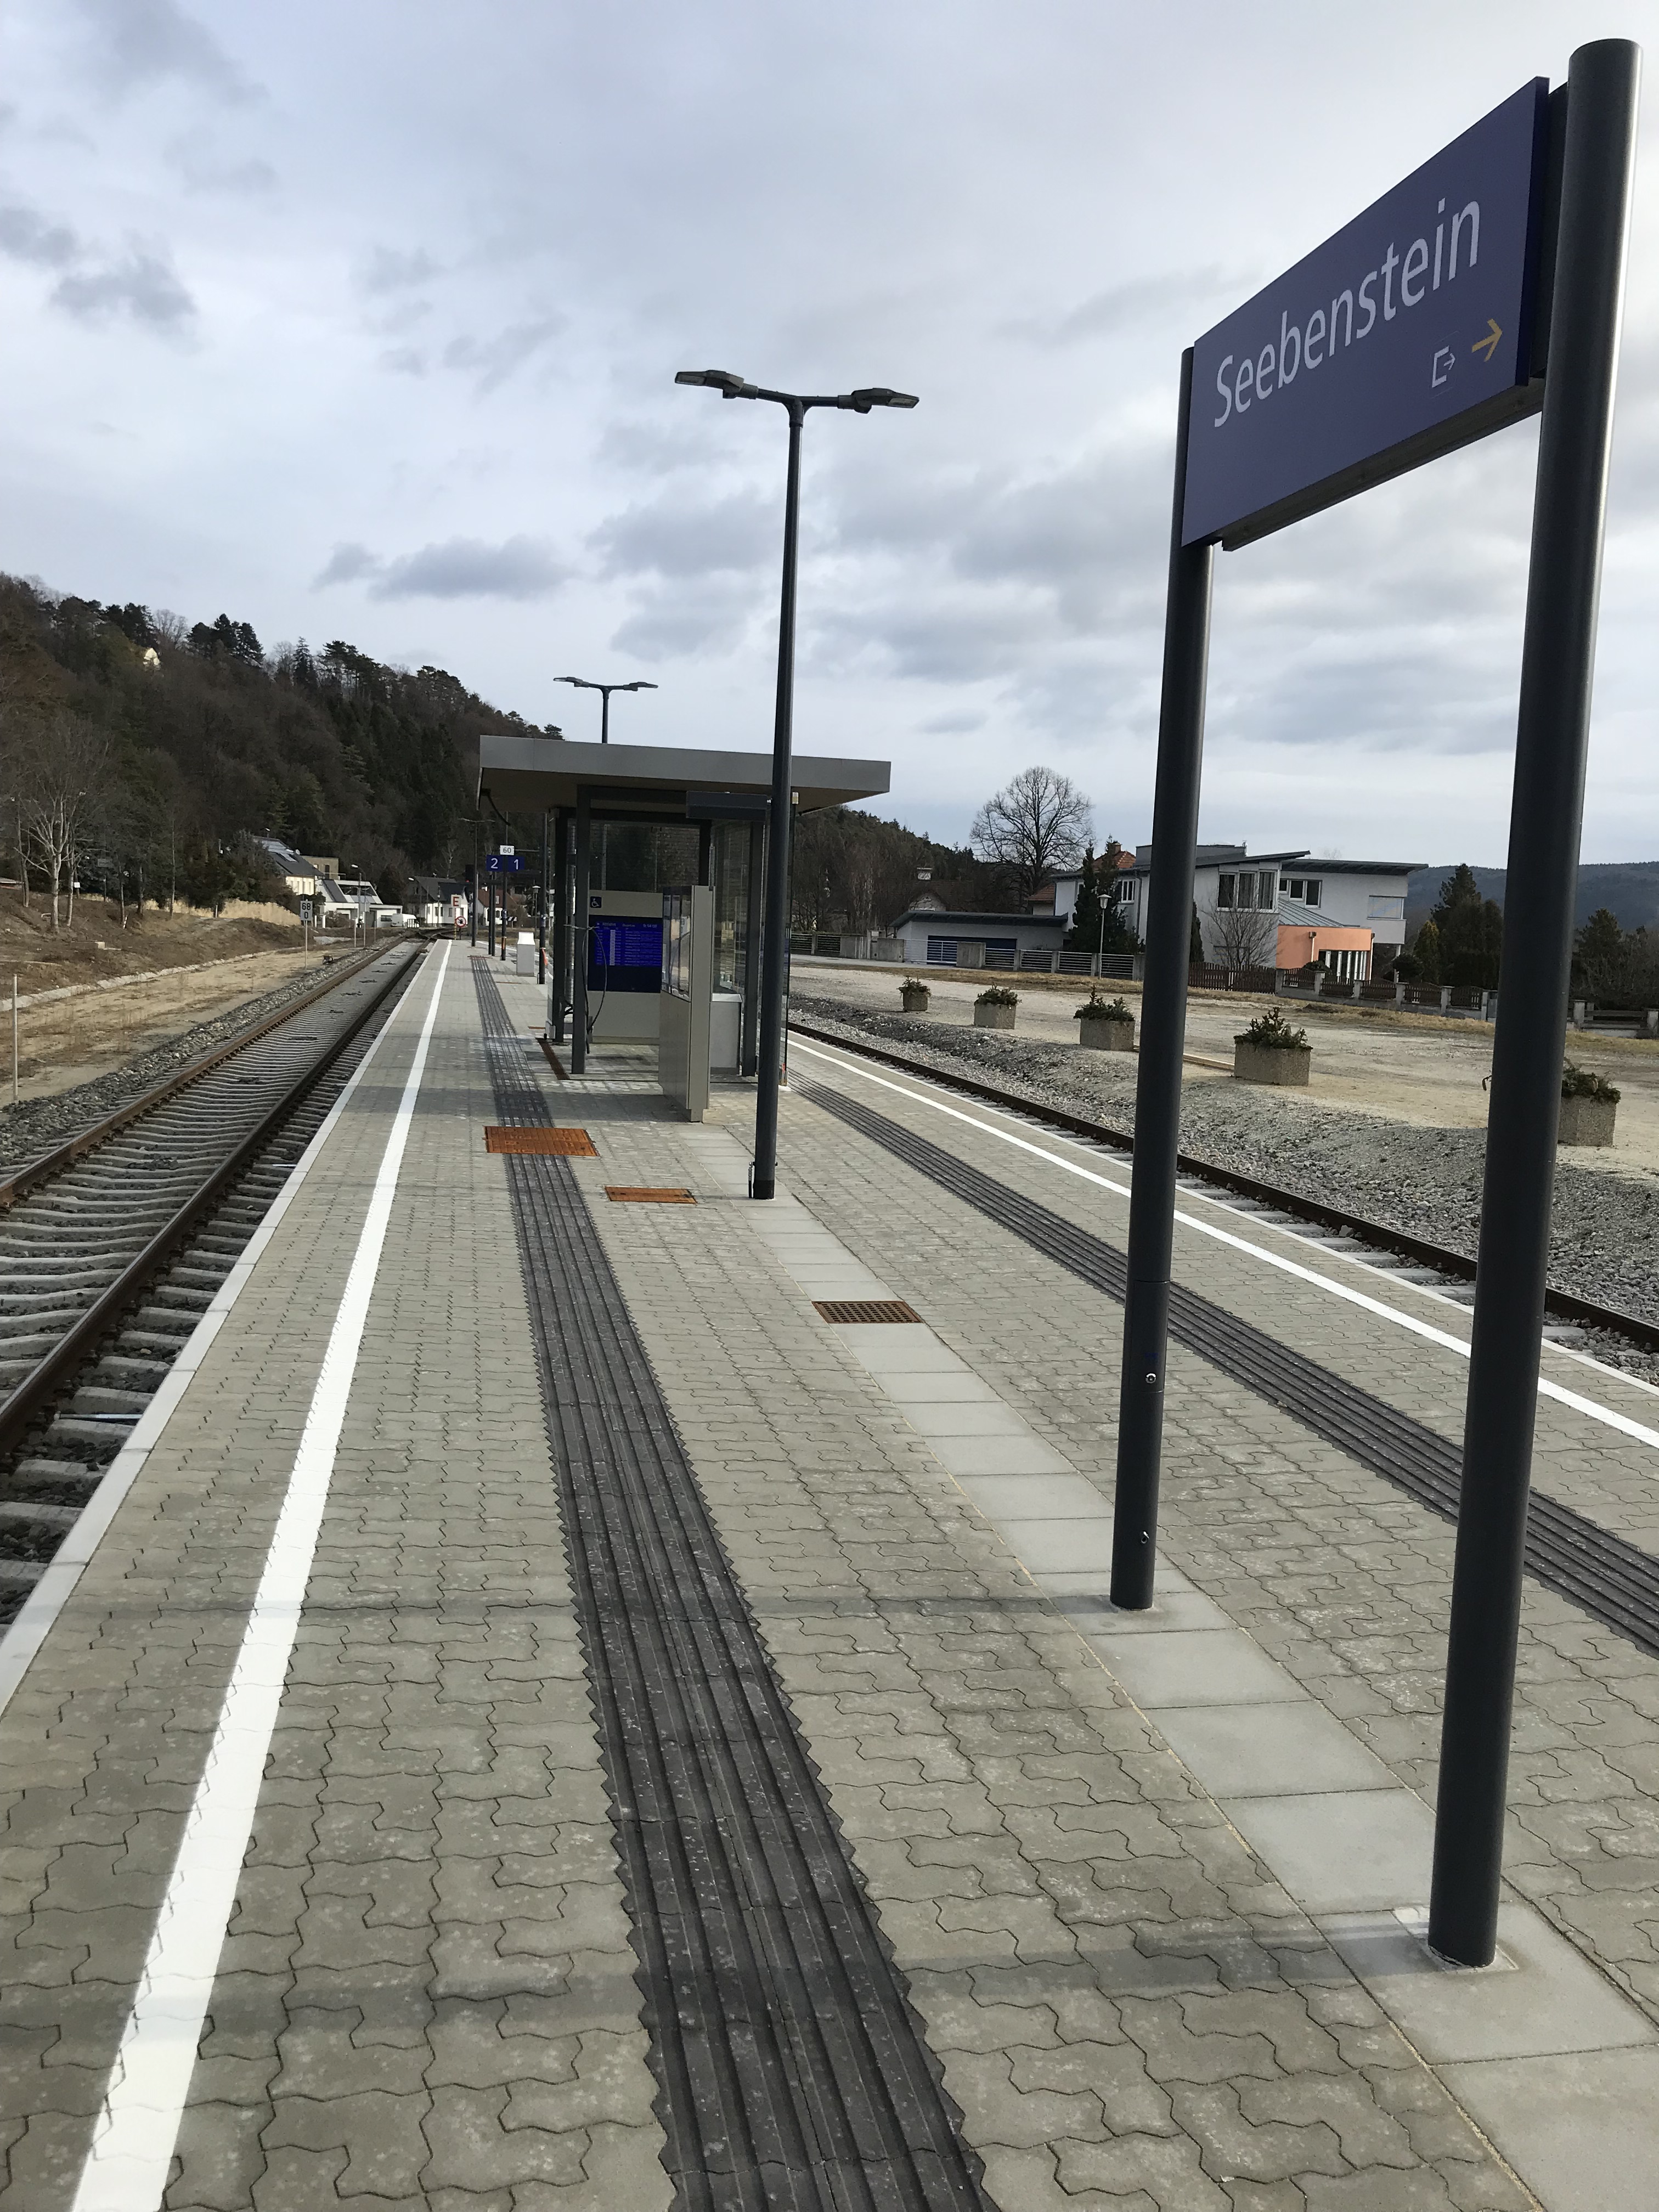 Umbau Bahnhof Seebenstein - Inžinierske stavby